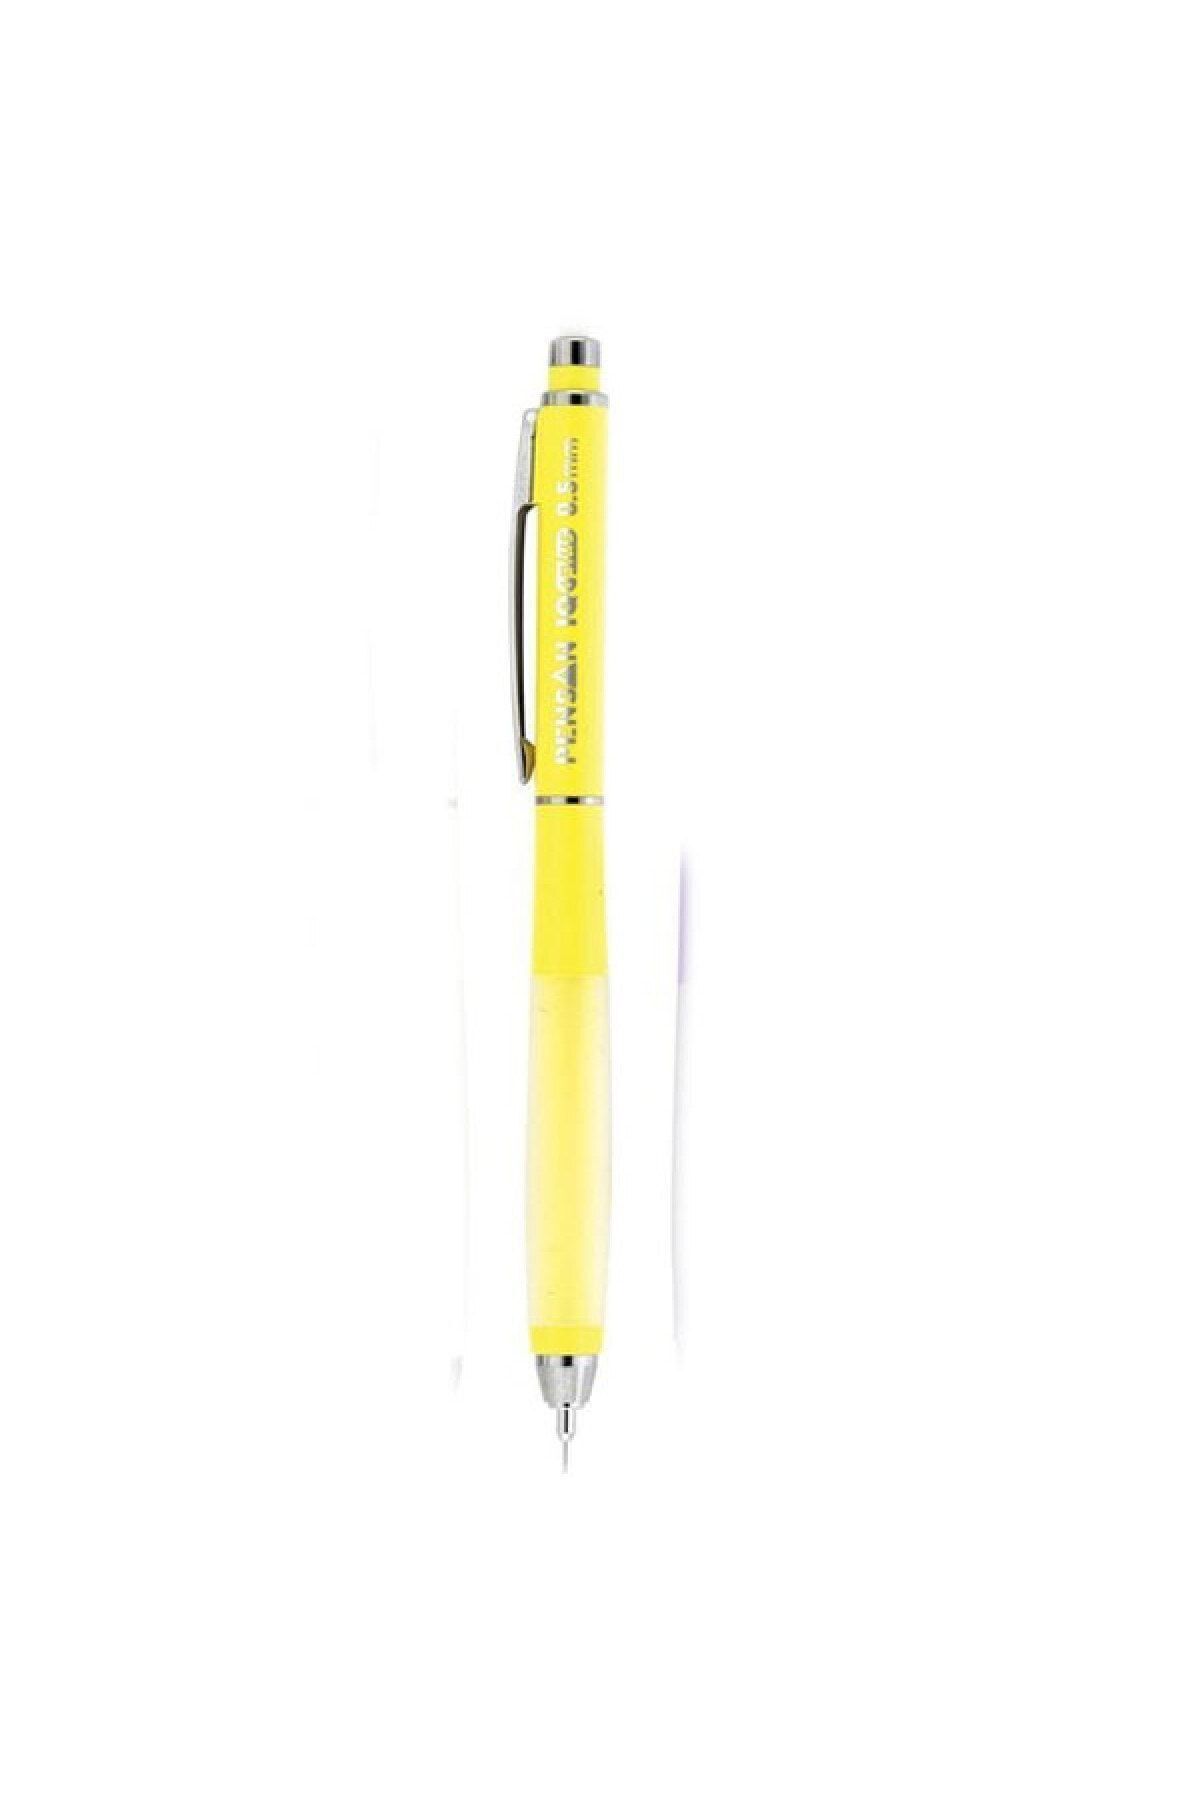 Pensan Iq Plus Versatil Kalem - 0.5 Mm Pastel Sarı Uçlu Kalem